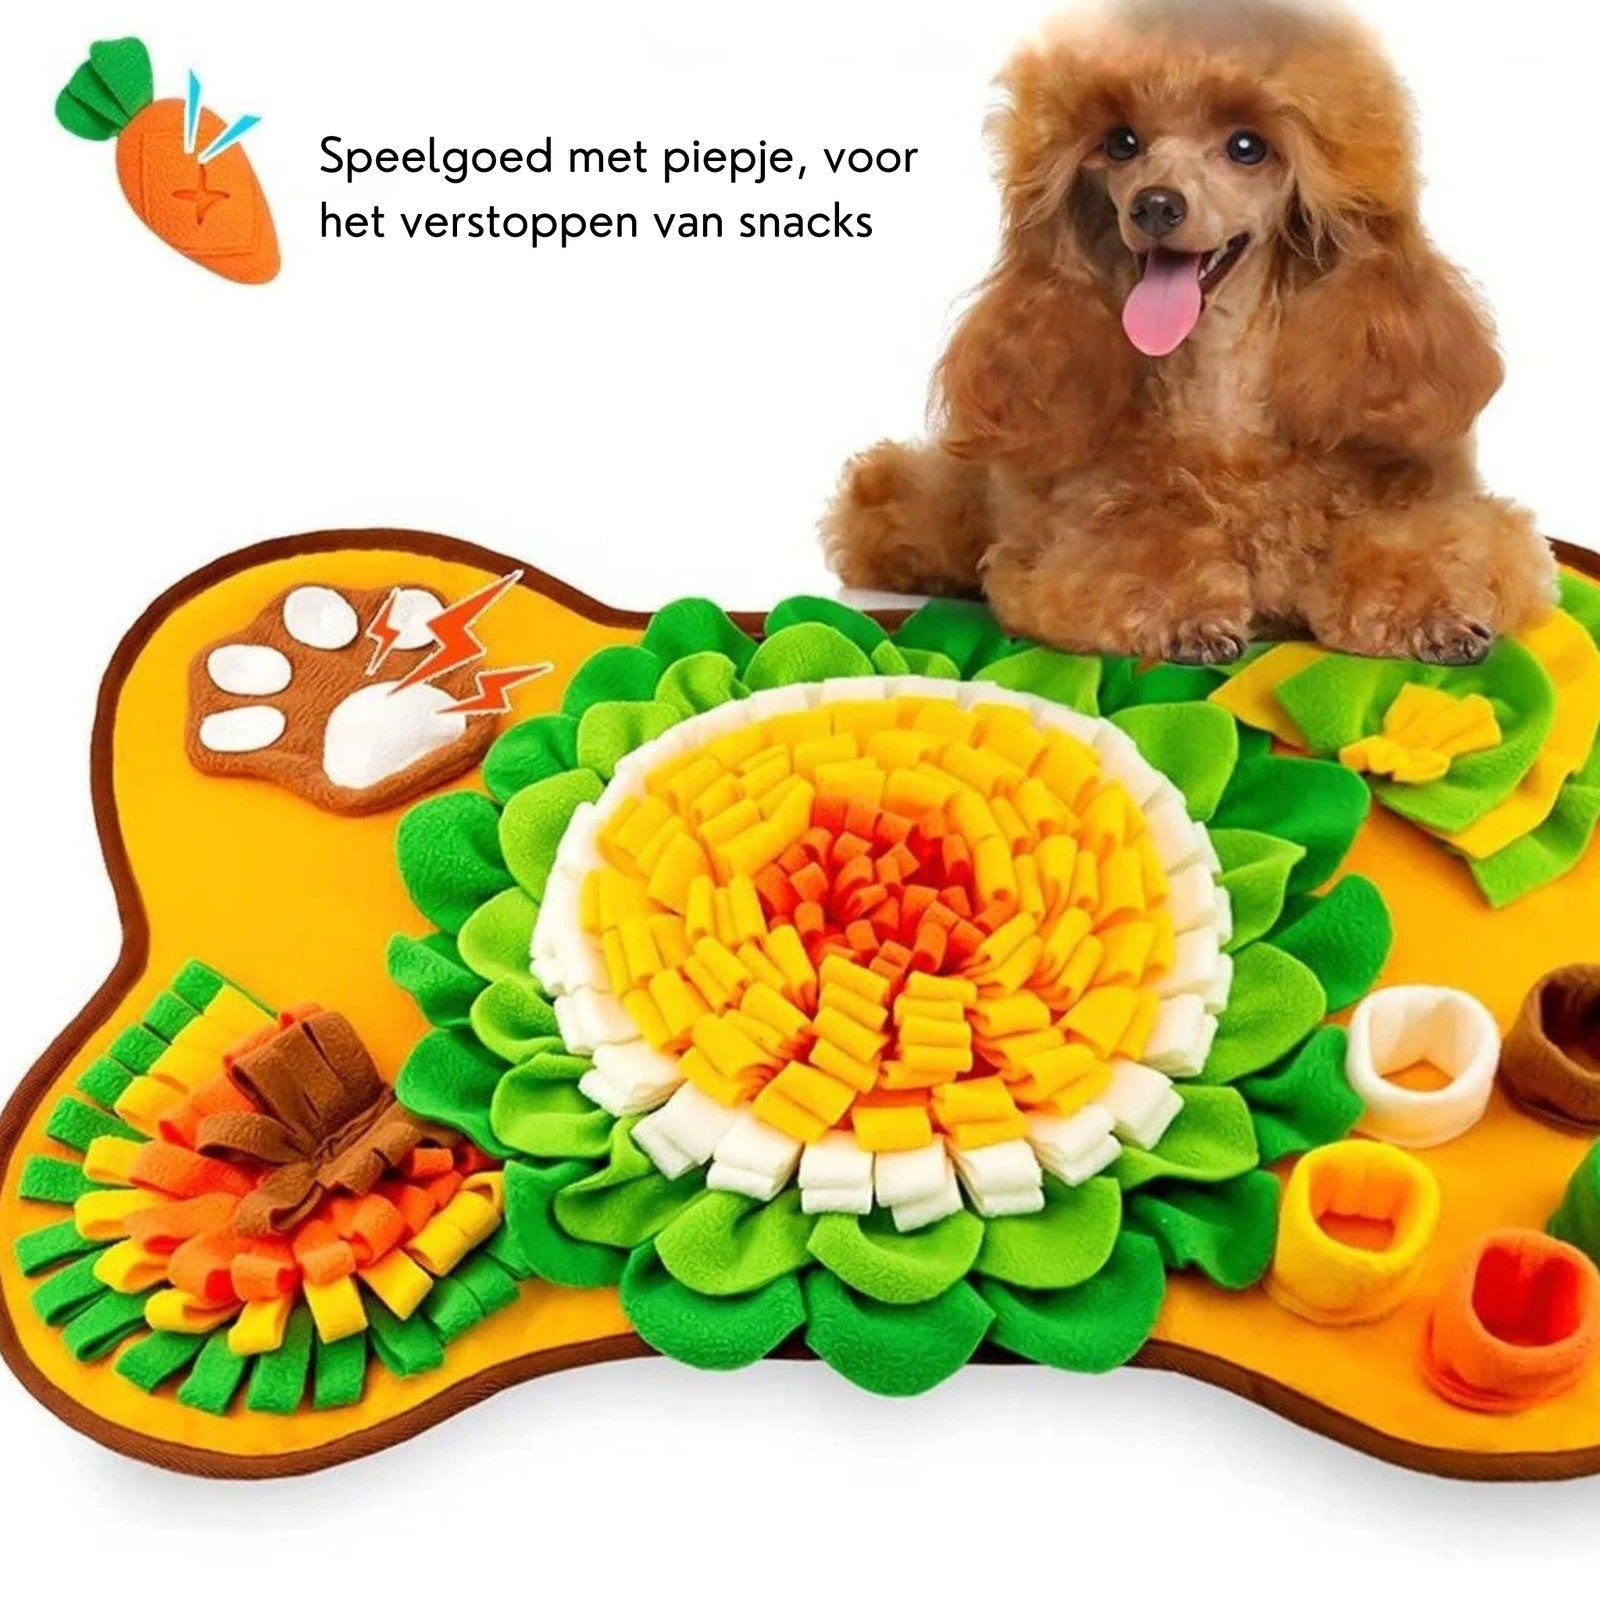 Xatory - Snuffelmat voor honden - WortelWroeter - Snuffelmat hond - Hondenpuzzel - Anti schrokbak - Hondenspeelgoed - Dogzoo